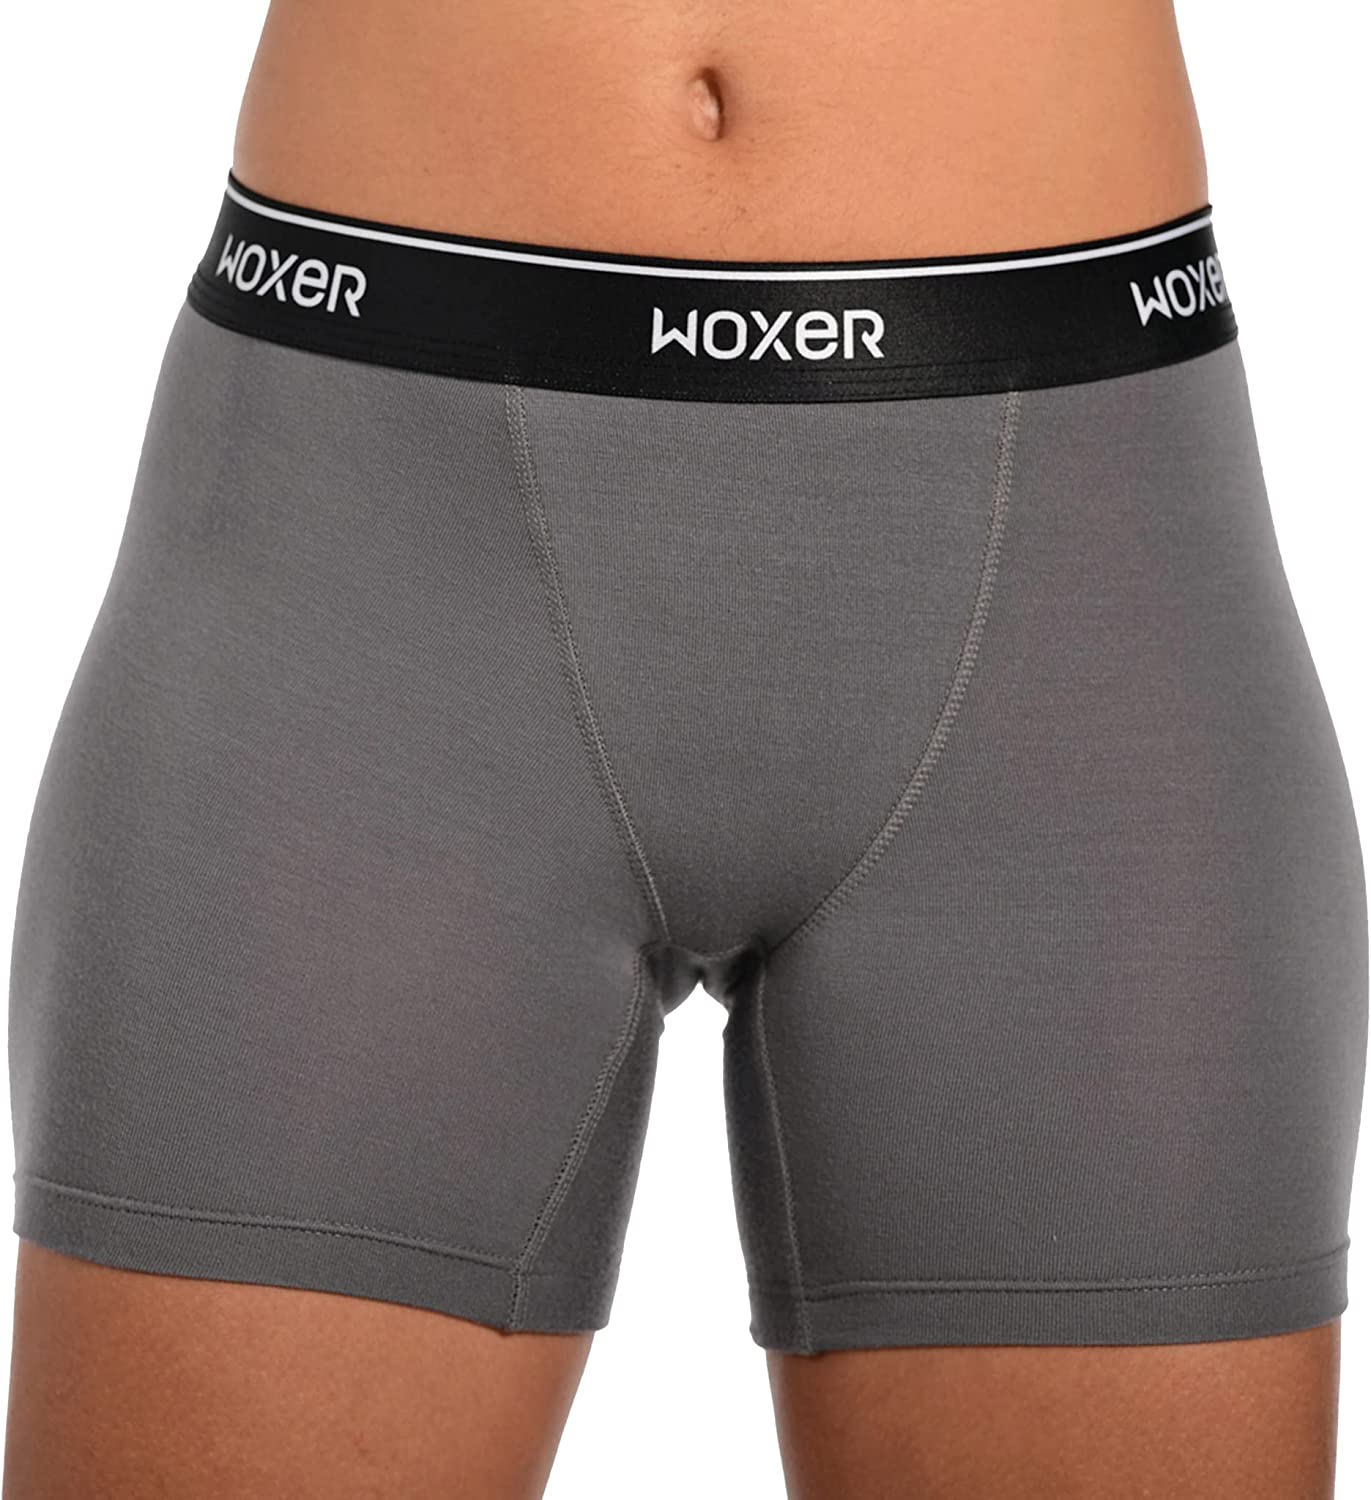 Woxer Womens Boxer Briefs Underwear, Baller 5” Boyshorts